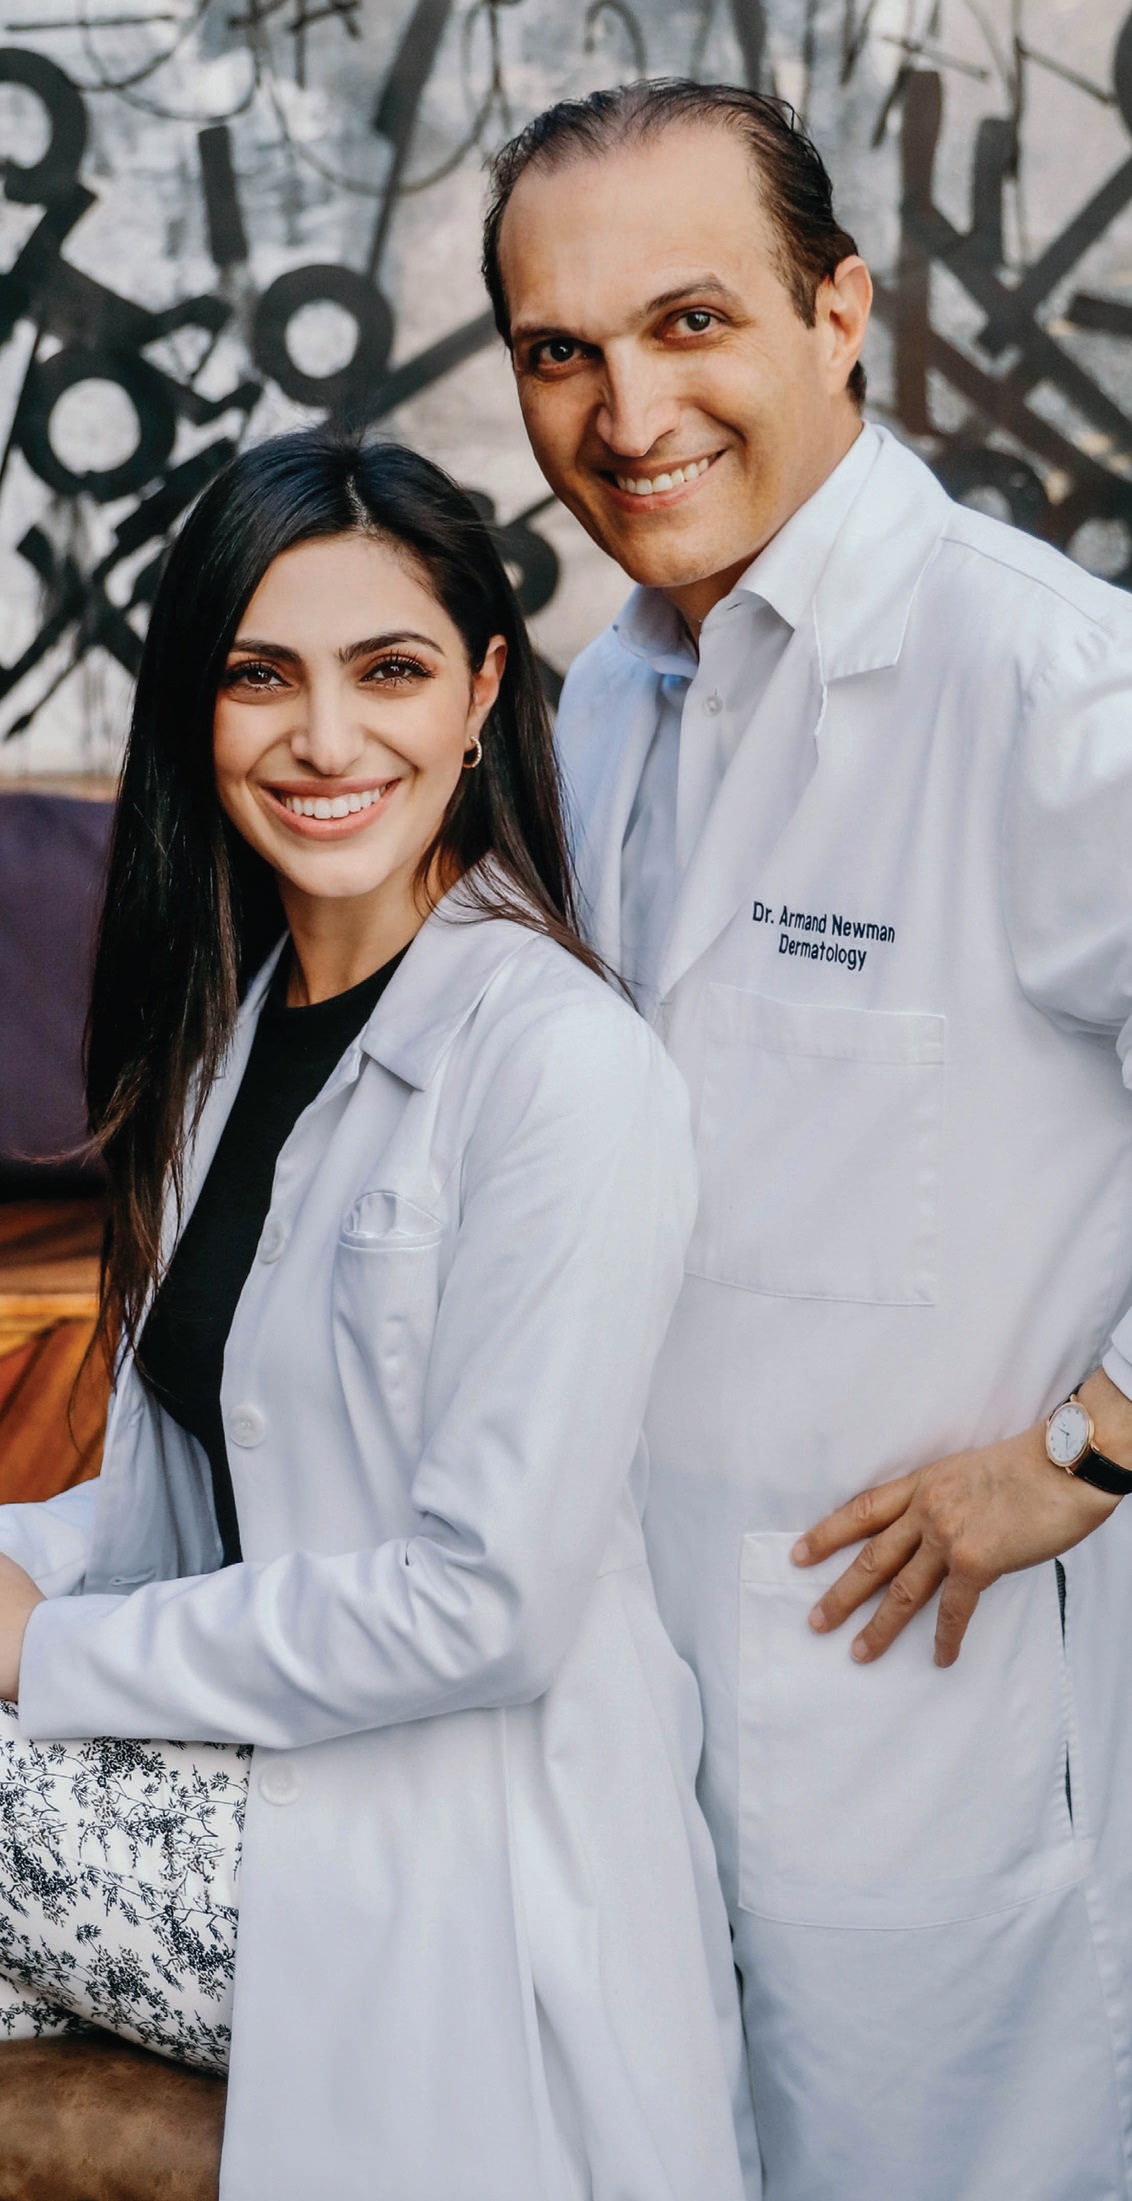 Dr. Daniella Newman & Dr. Armand Newman